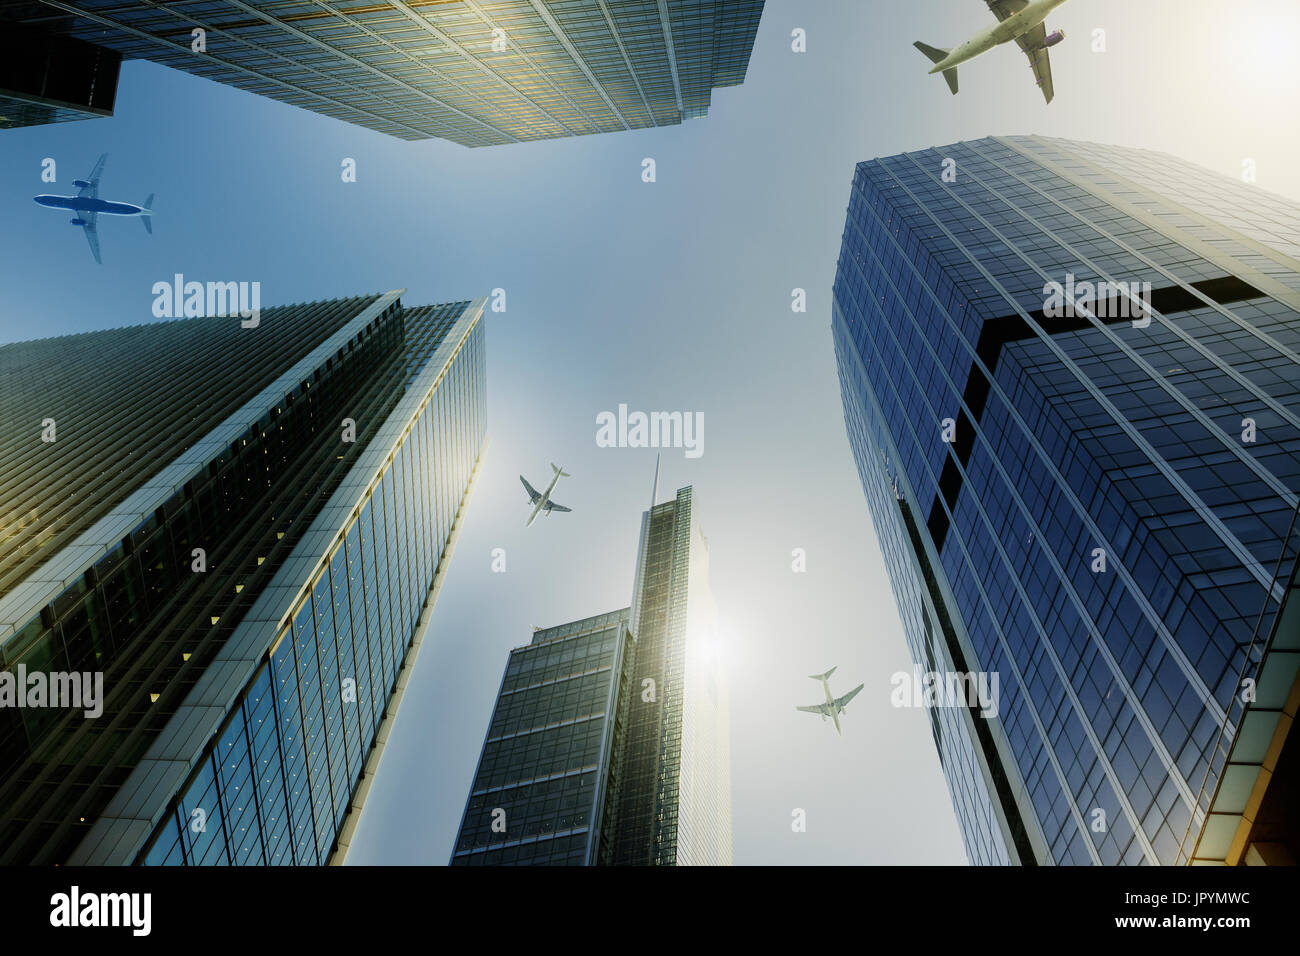 Les avions survolant les tours d'habitation, travel concept Banque D'Images